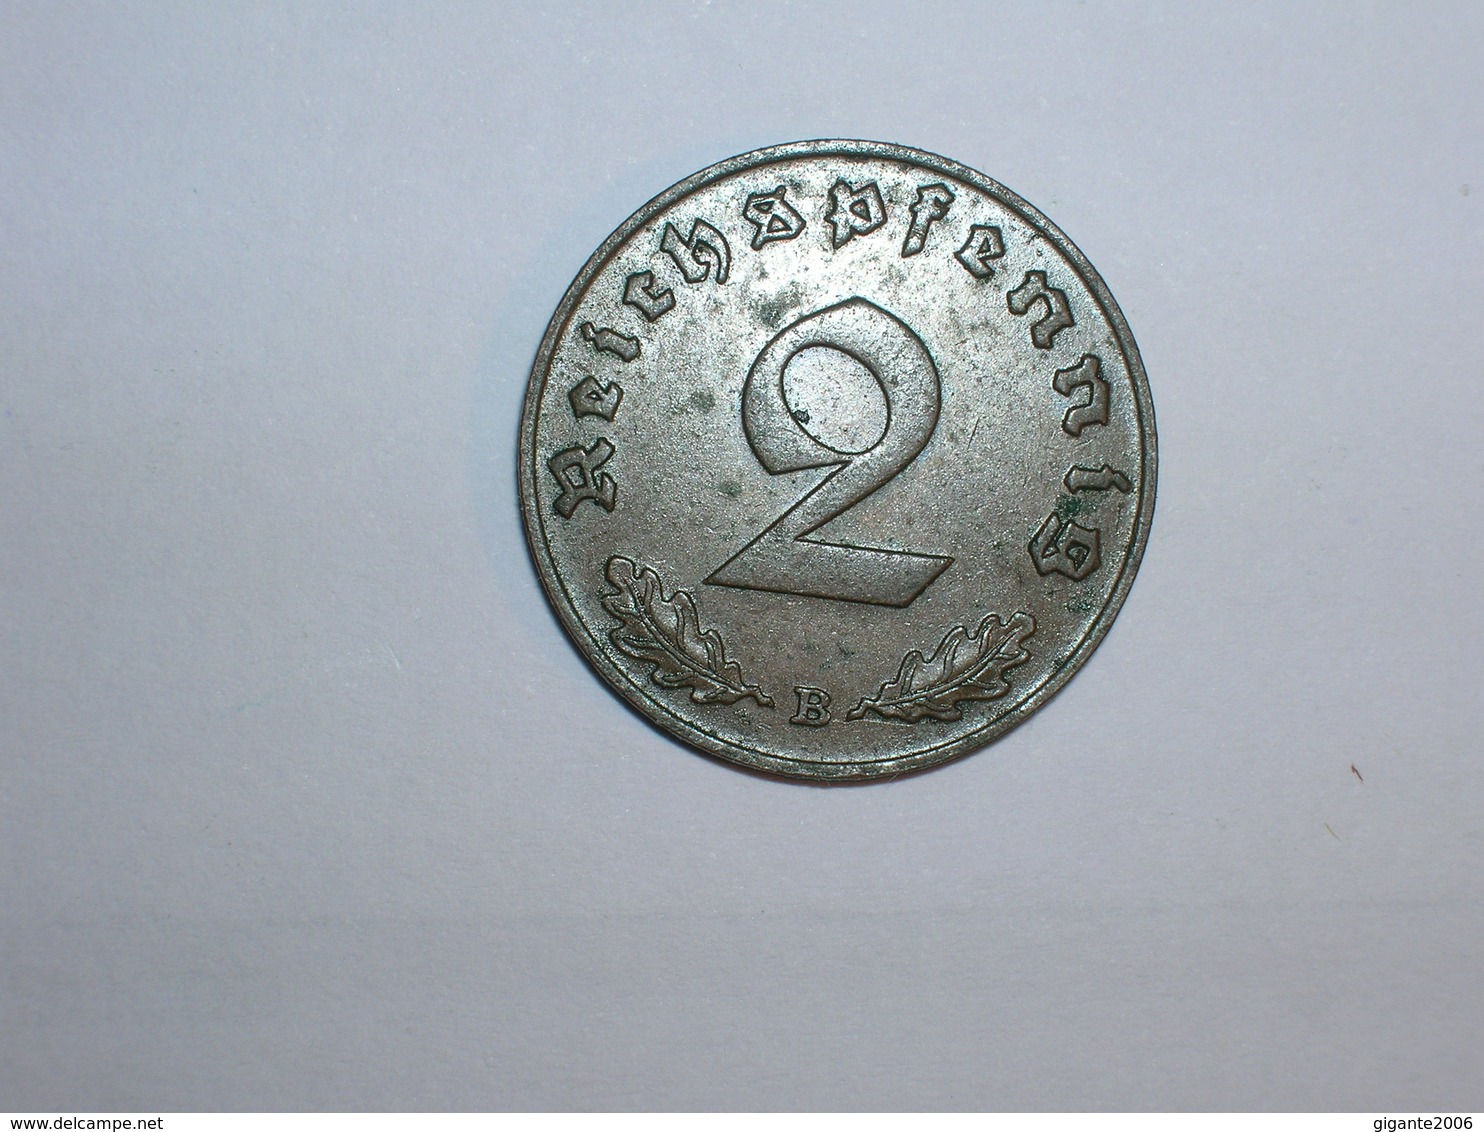 ALEMANIA- 2 PFENNIG 1939 B (948) - 2 Reichspfennig